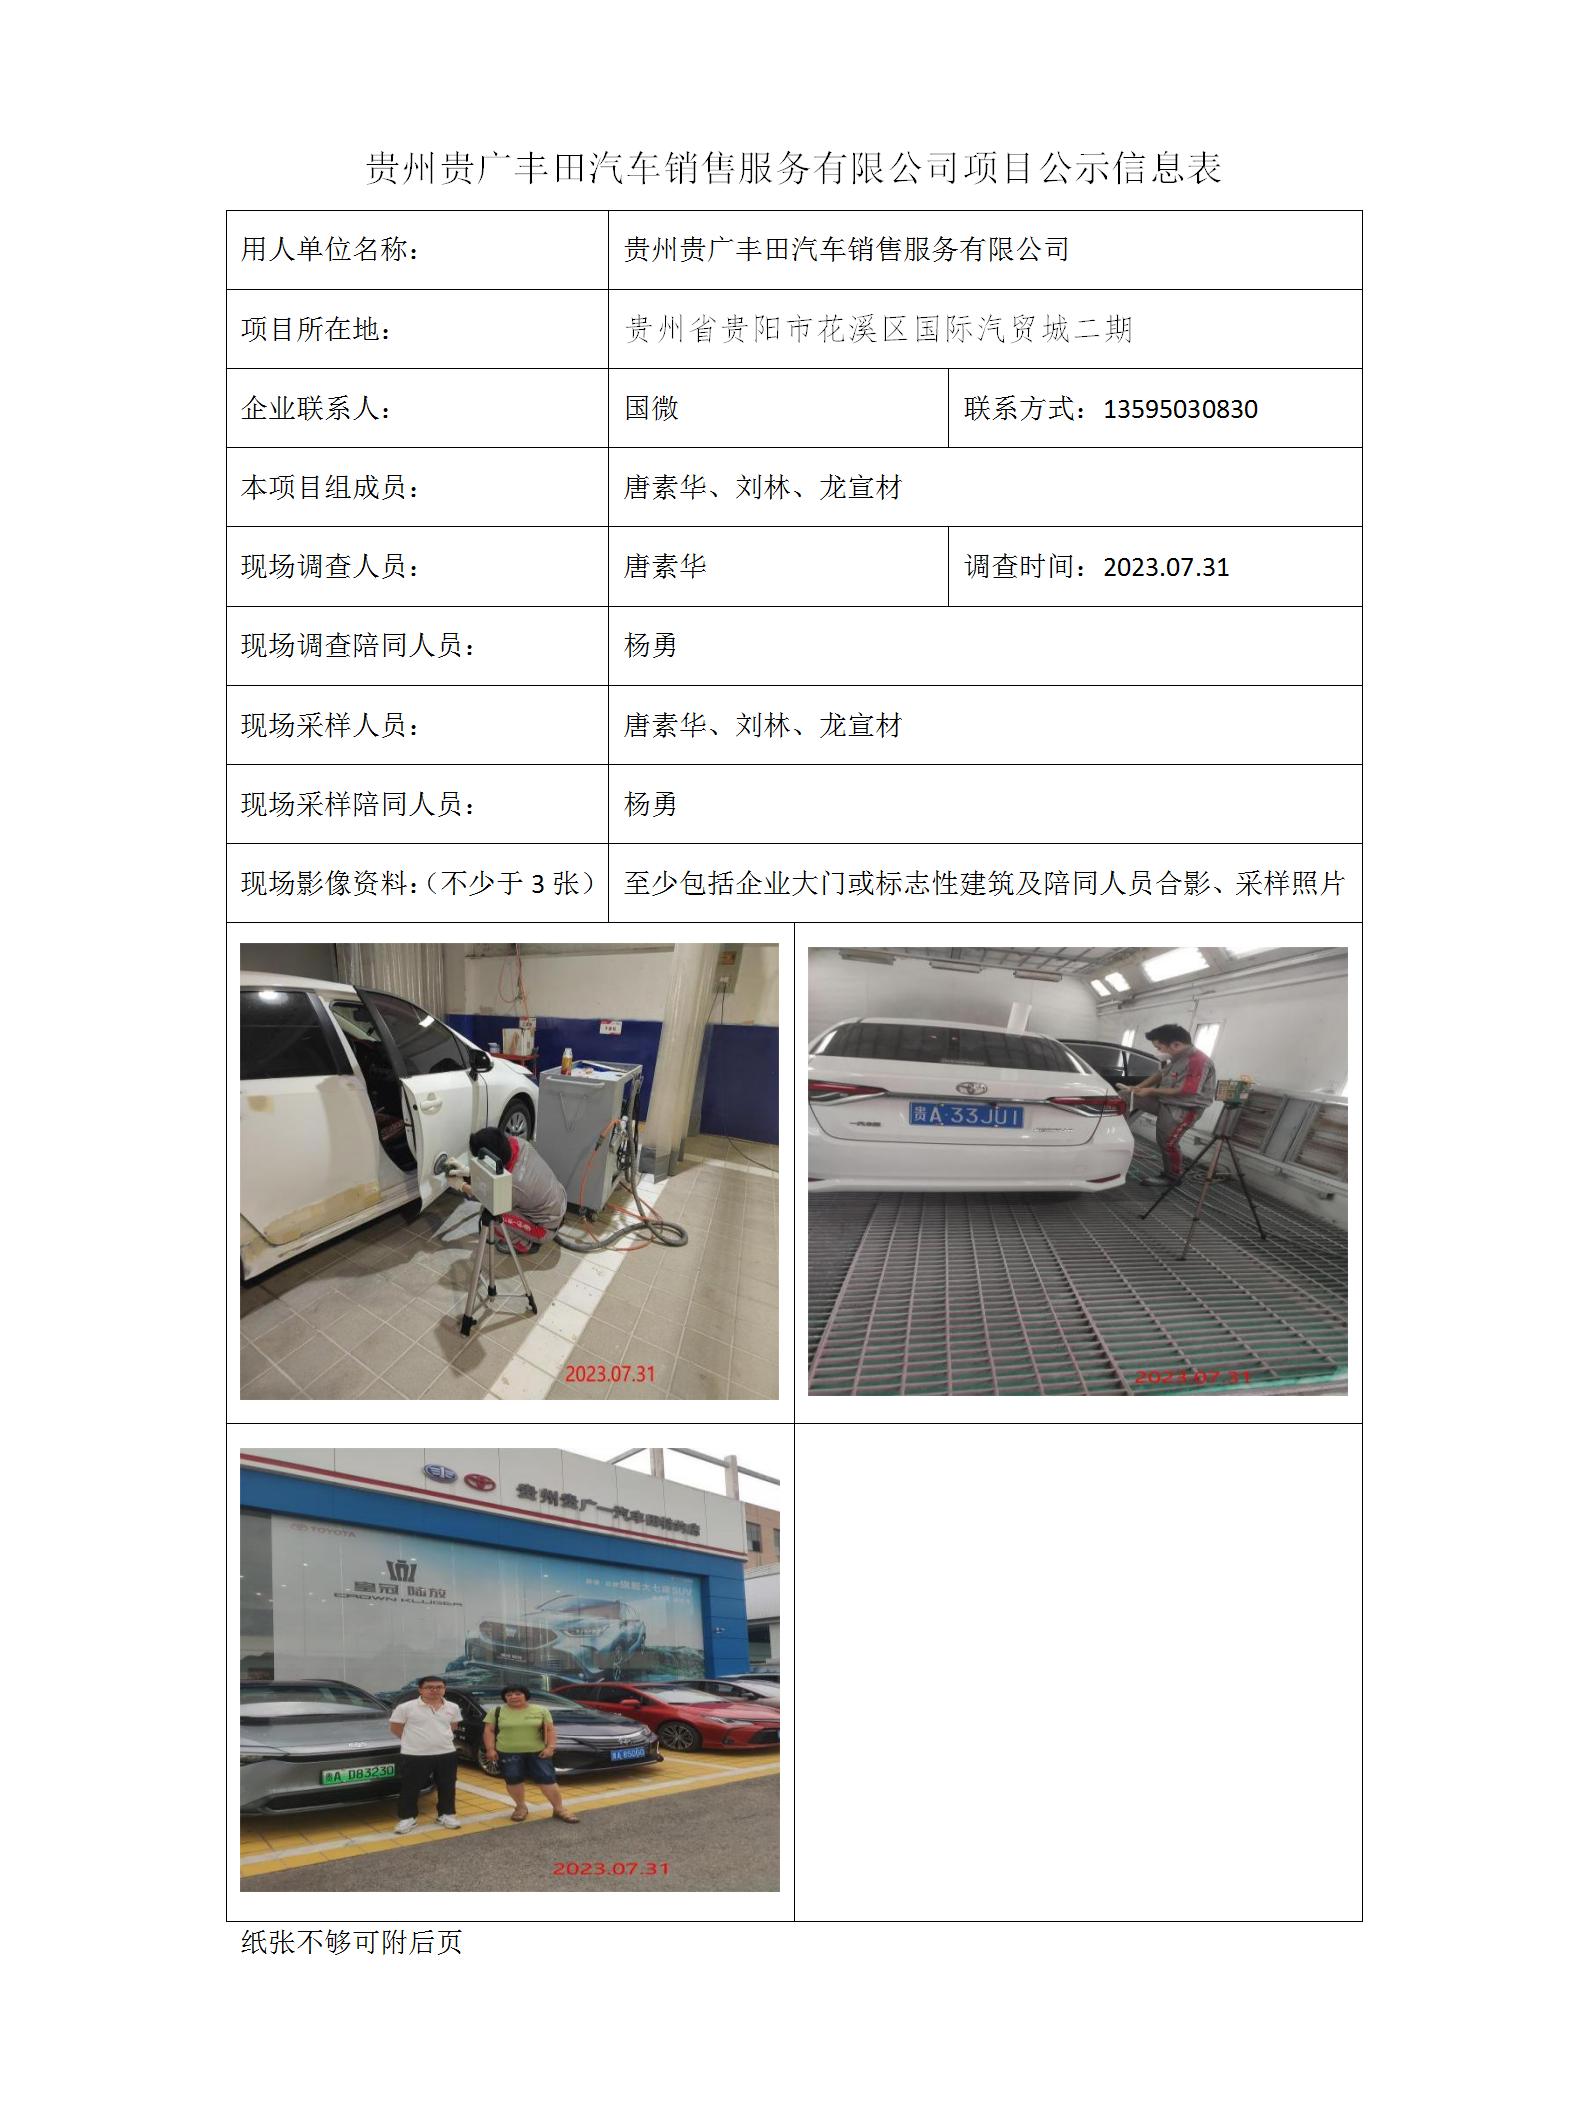 贵州贵广丰田汽车销售服务有限公司项目公示信息表_01.jpg